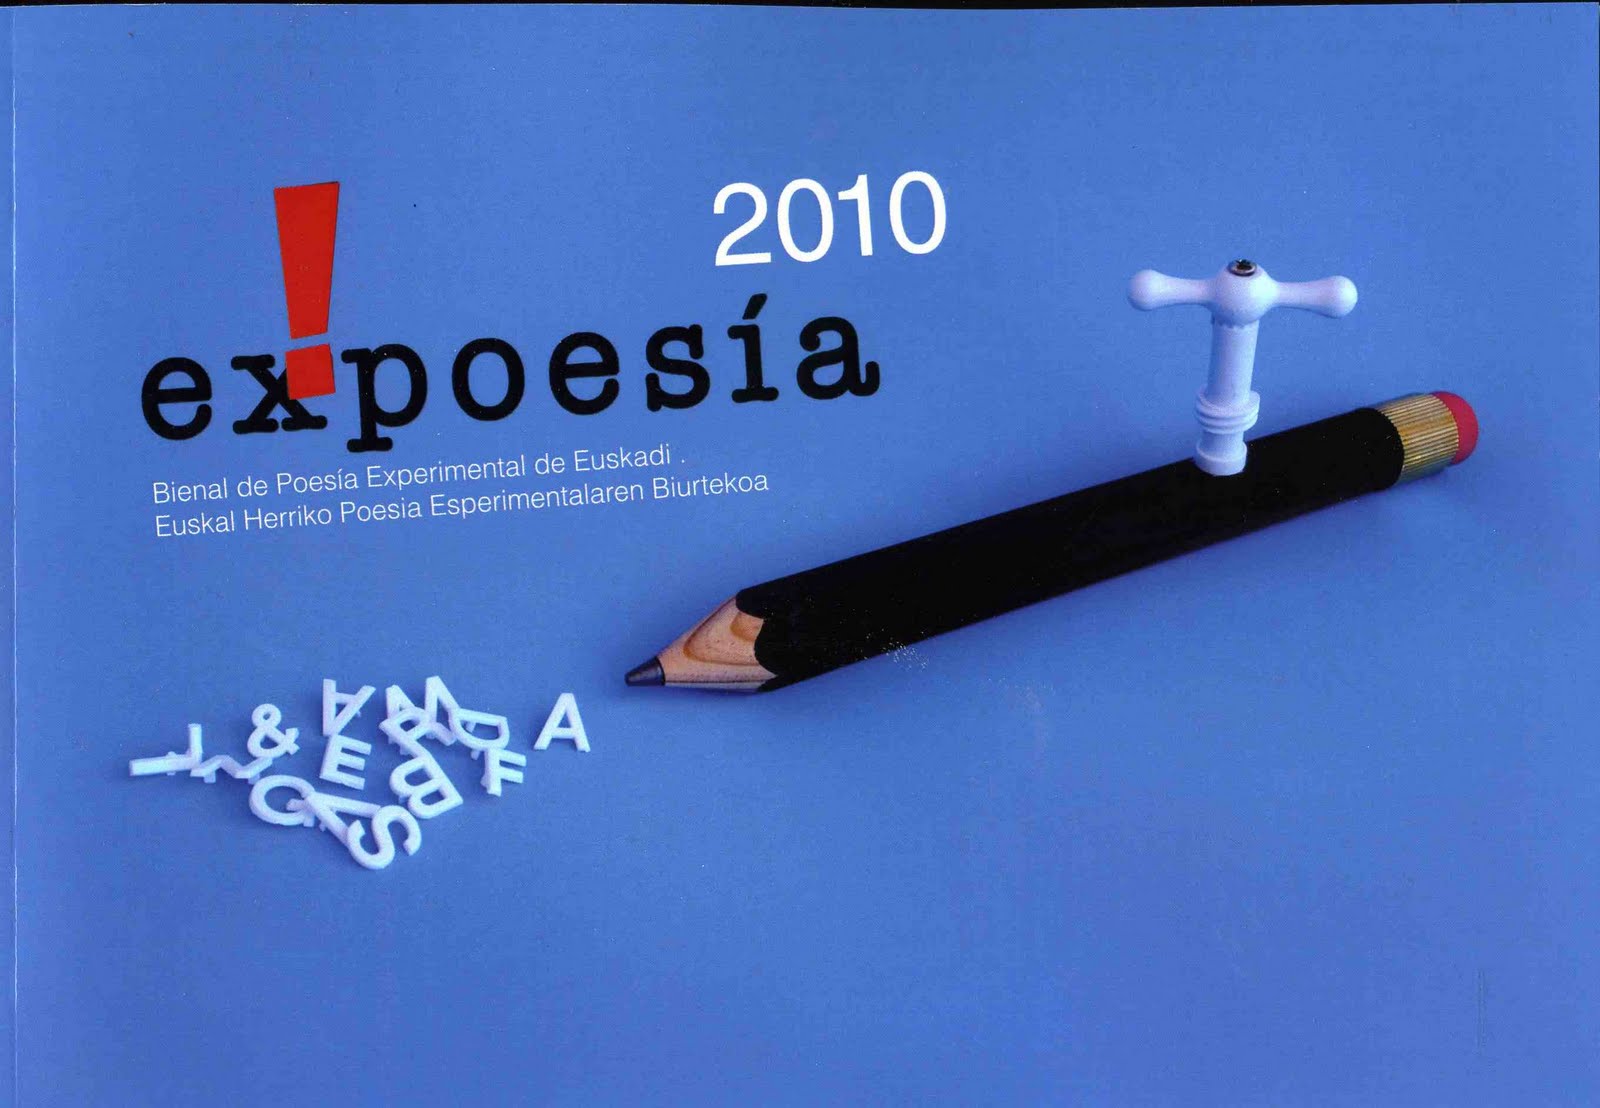 EX! POESÍA 2010